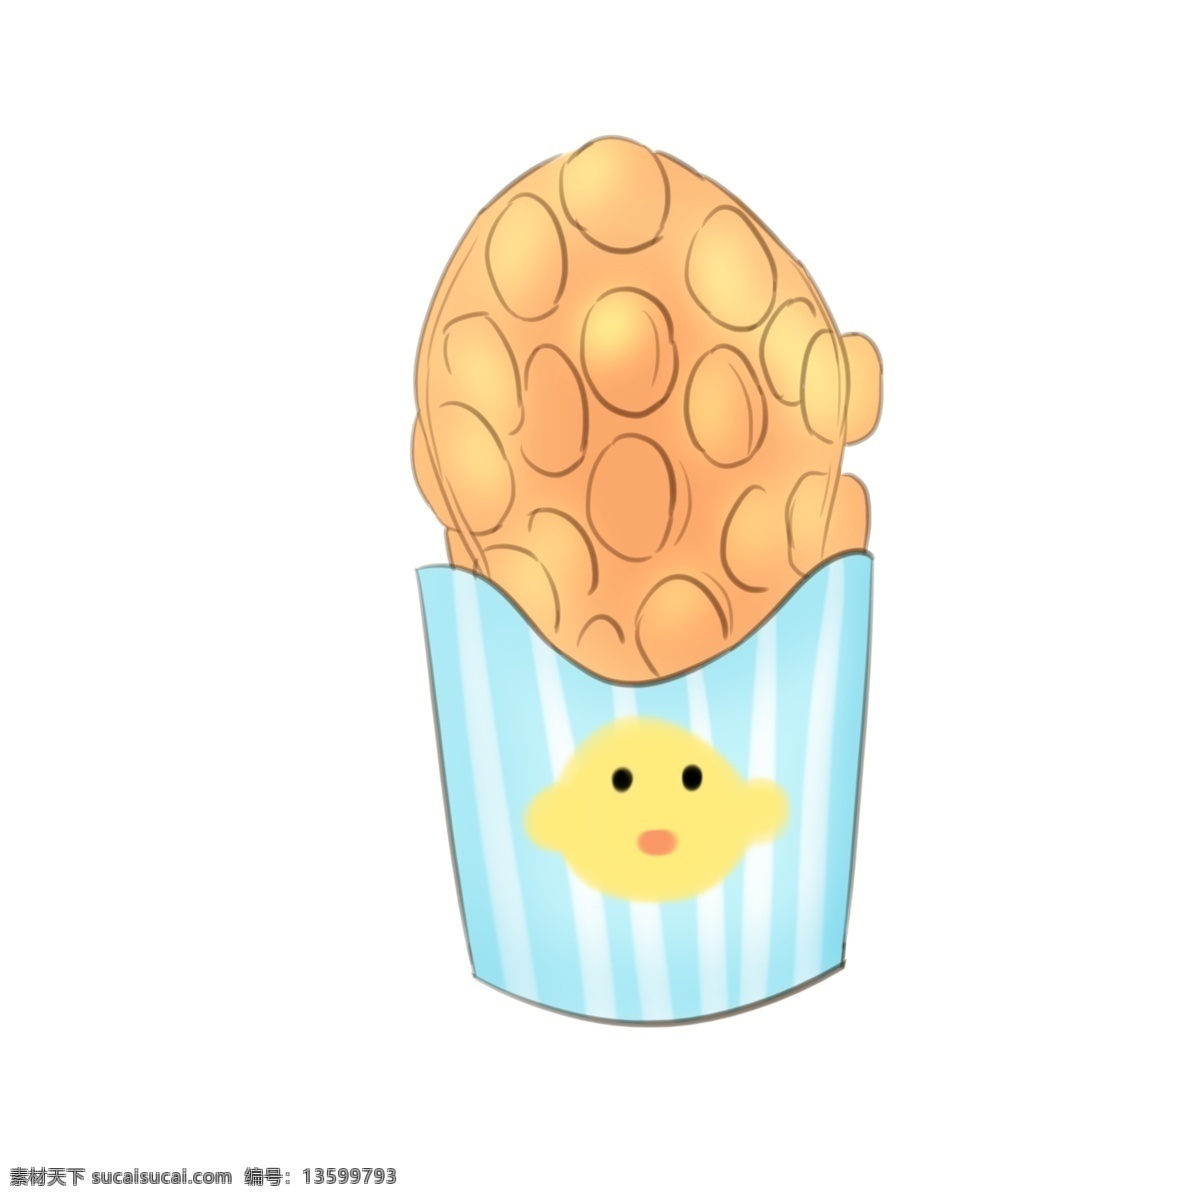 立体 黄色 鸡蛋 仔 插图 蓝色杯子 一杯鸡蛋仔 黄色鸡蛋仔 好吃的鸡蛋仔 立体鸡蛋仔 黄色图案 可口的鸡蛋仔